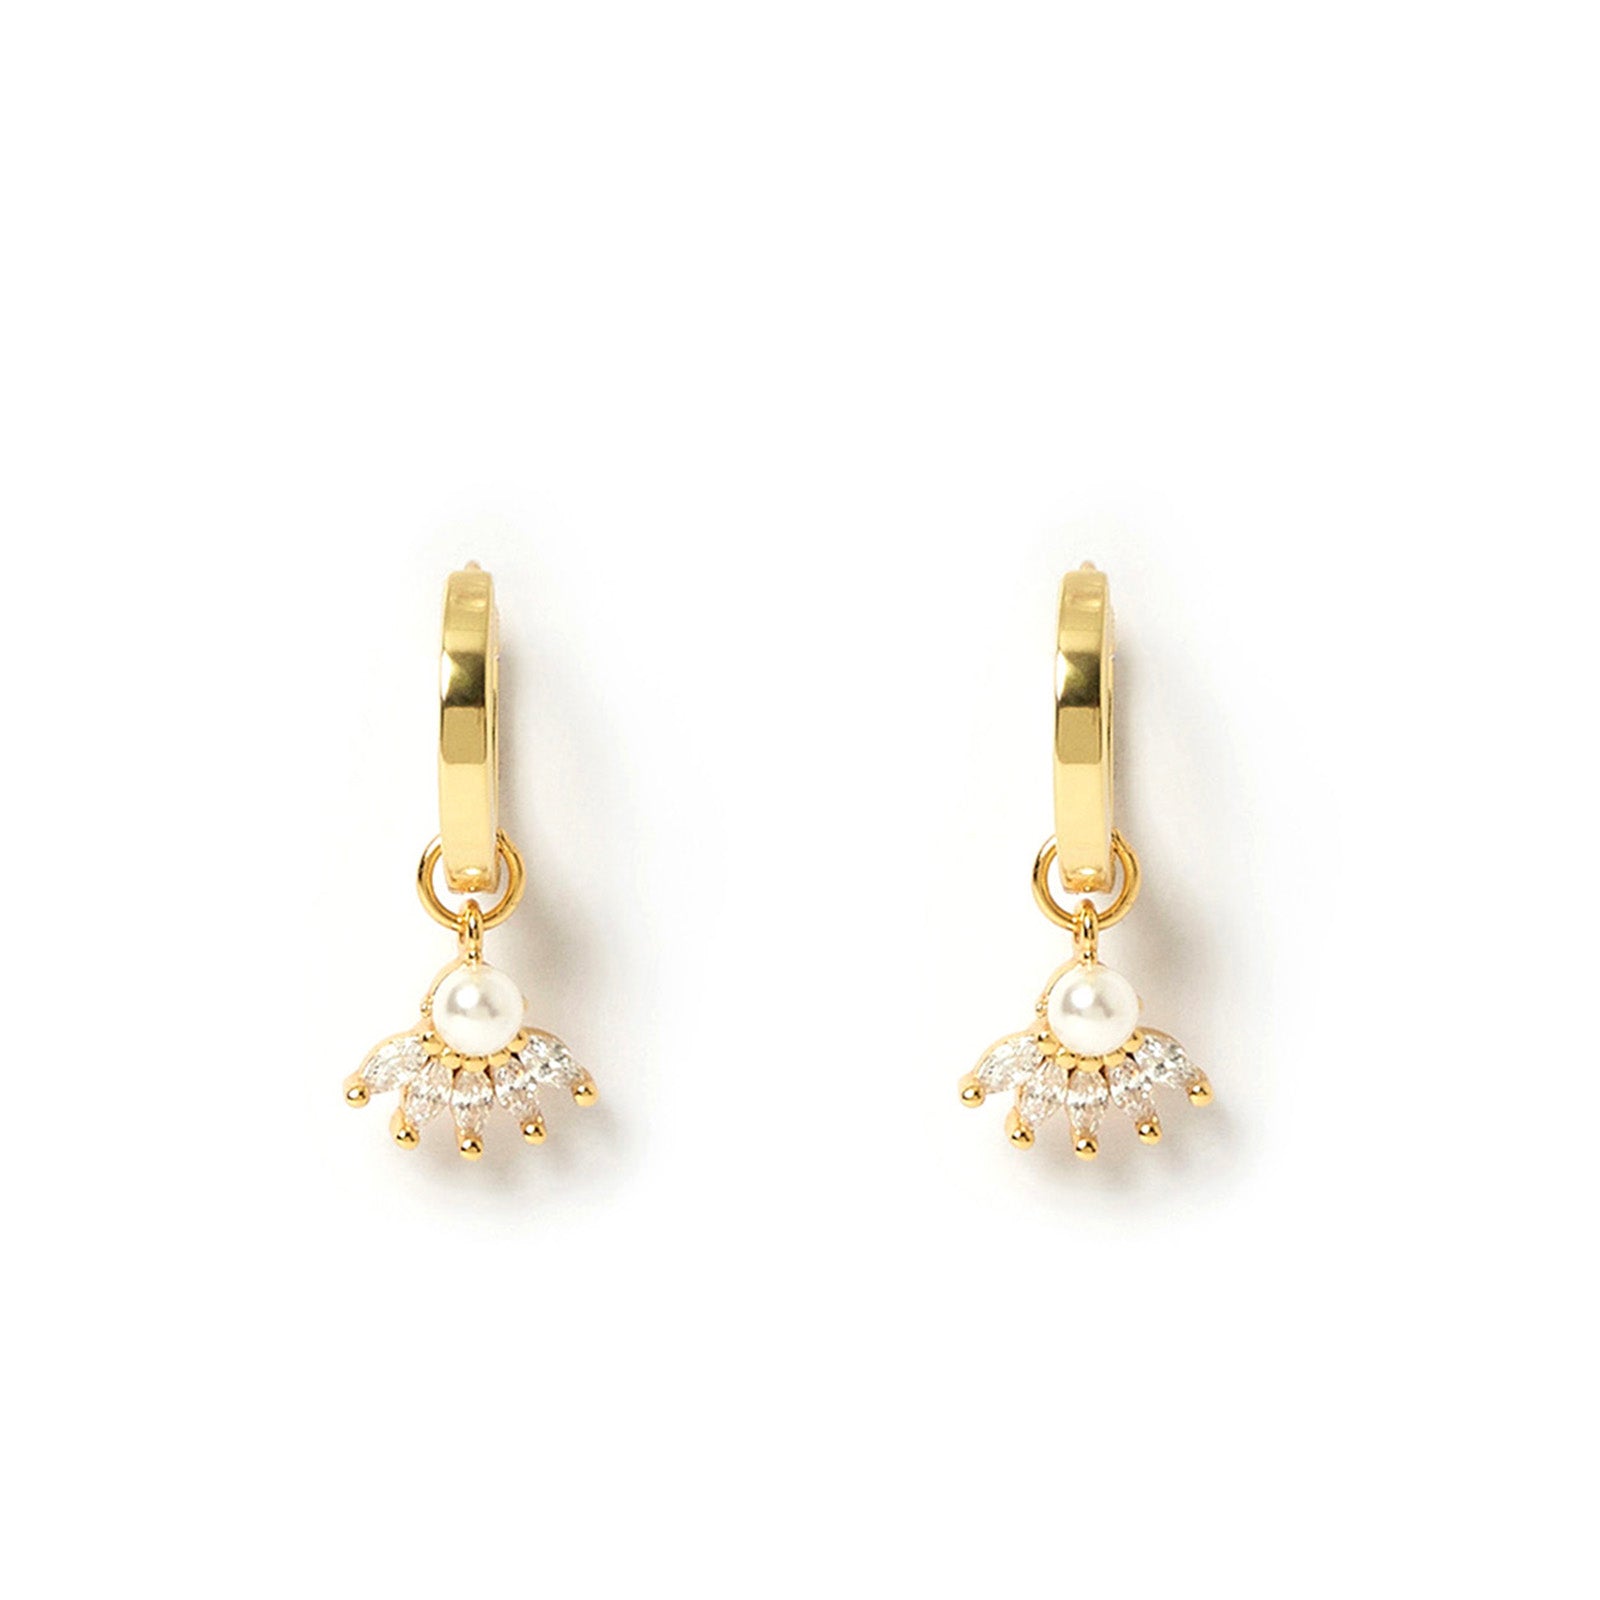 Della Gold Charm Earrings